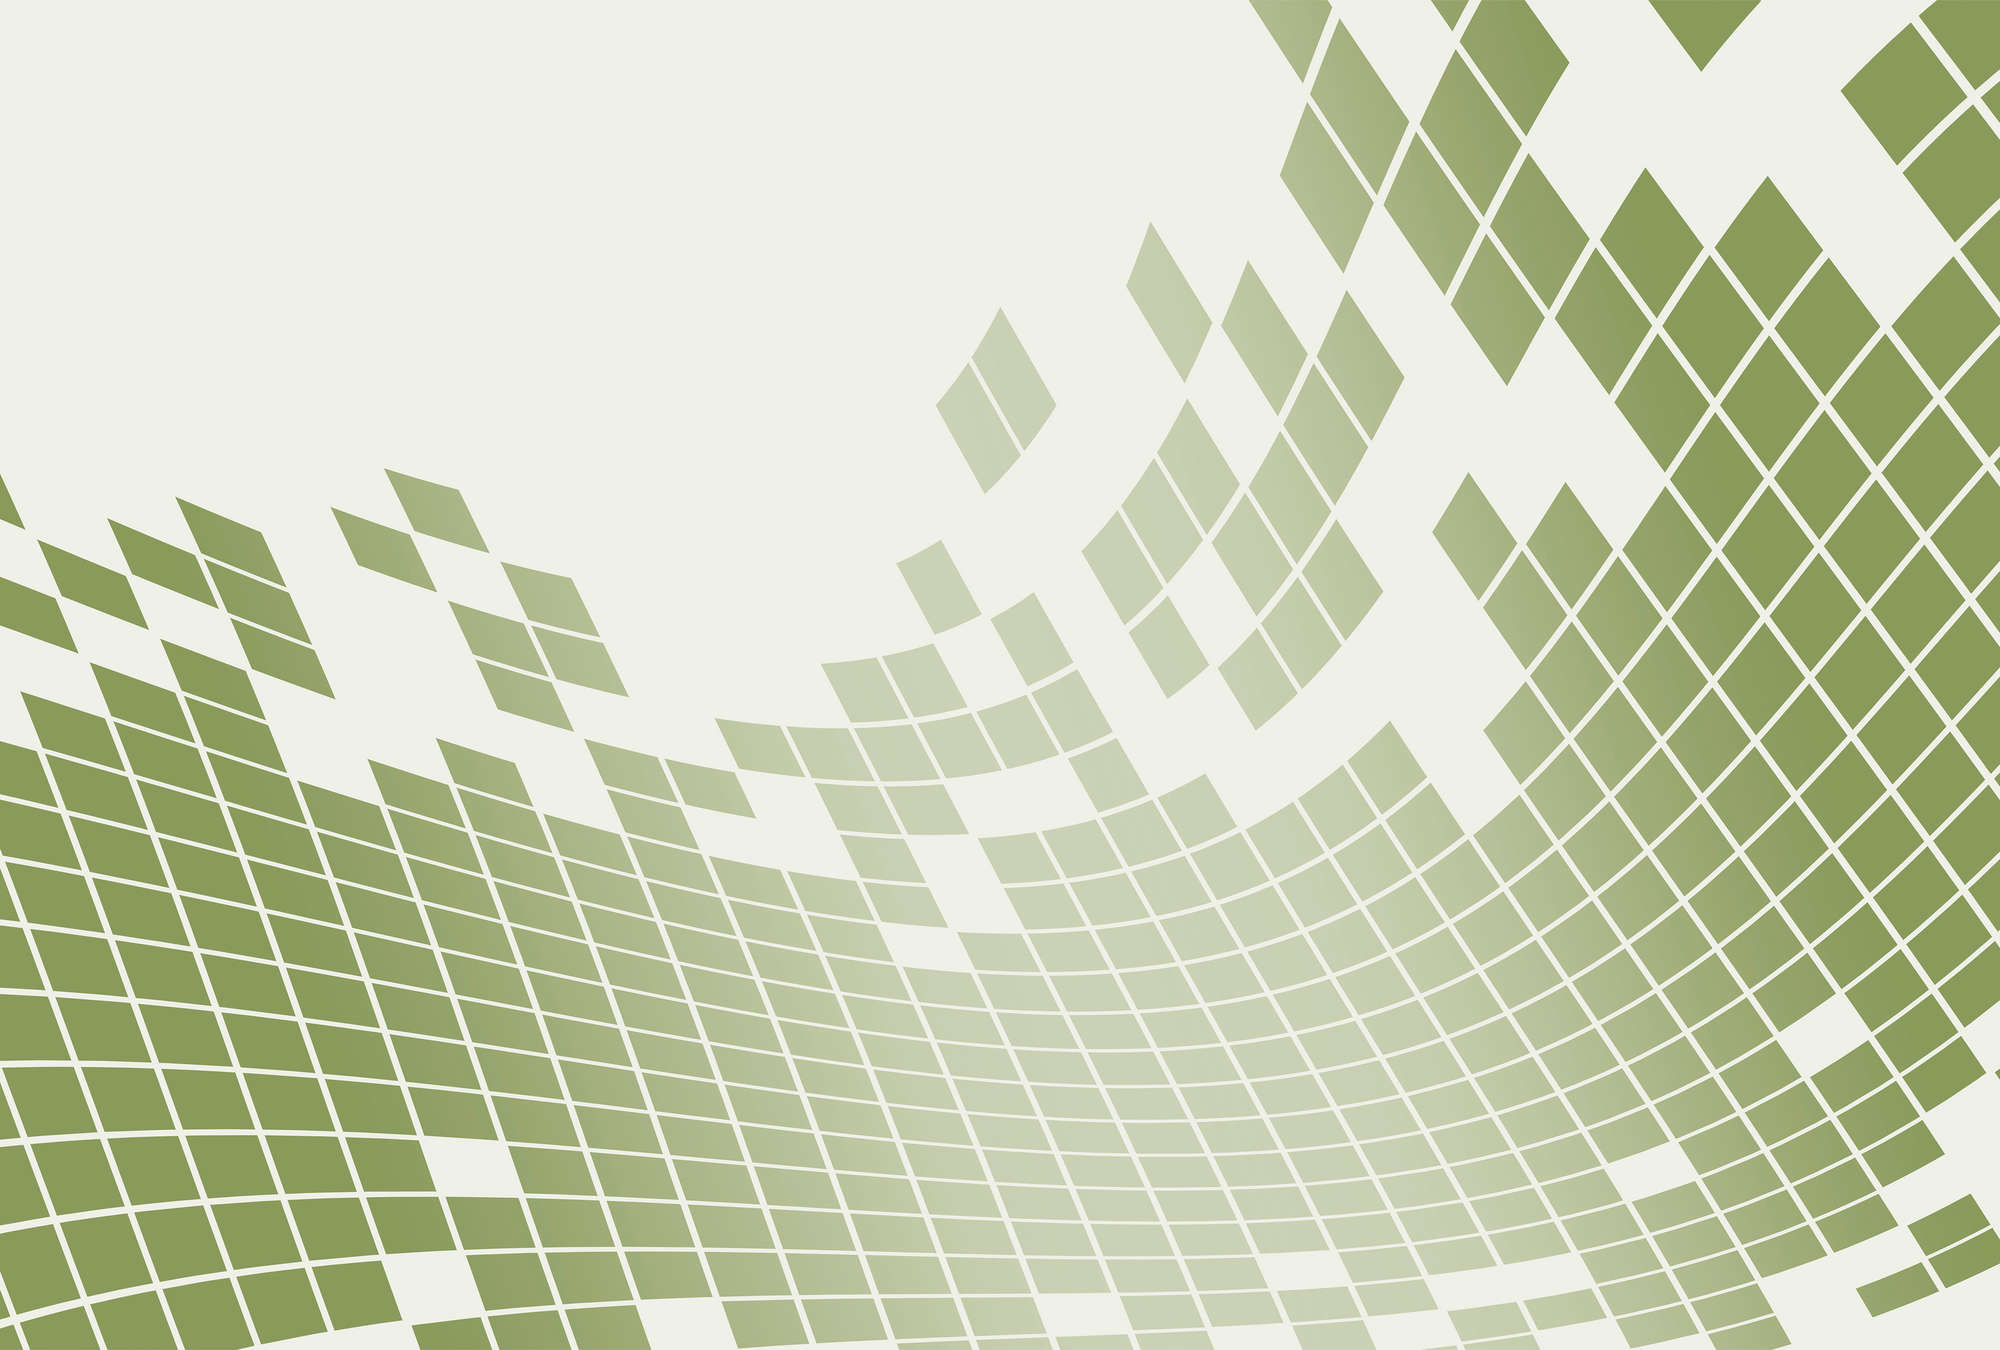             Grafisch Ontwerp Wit & Groen met Vierkant Patroonbehang
        